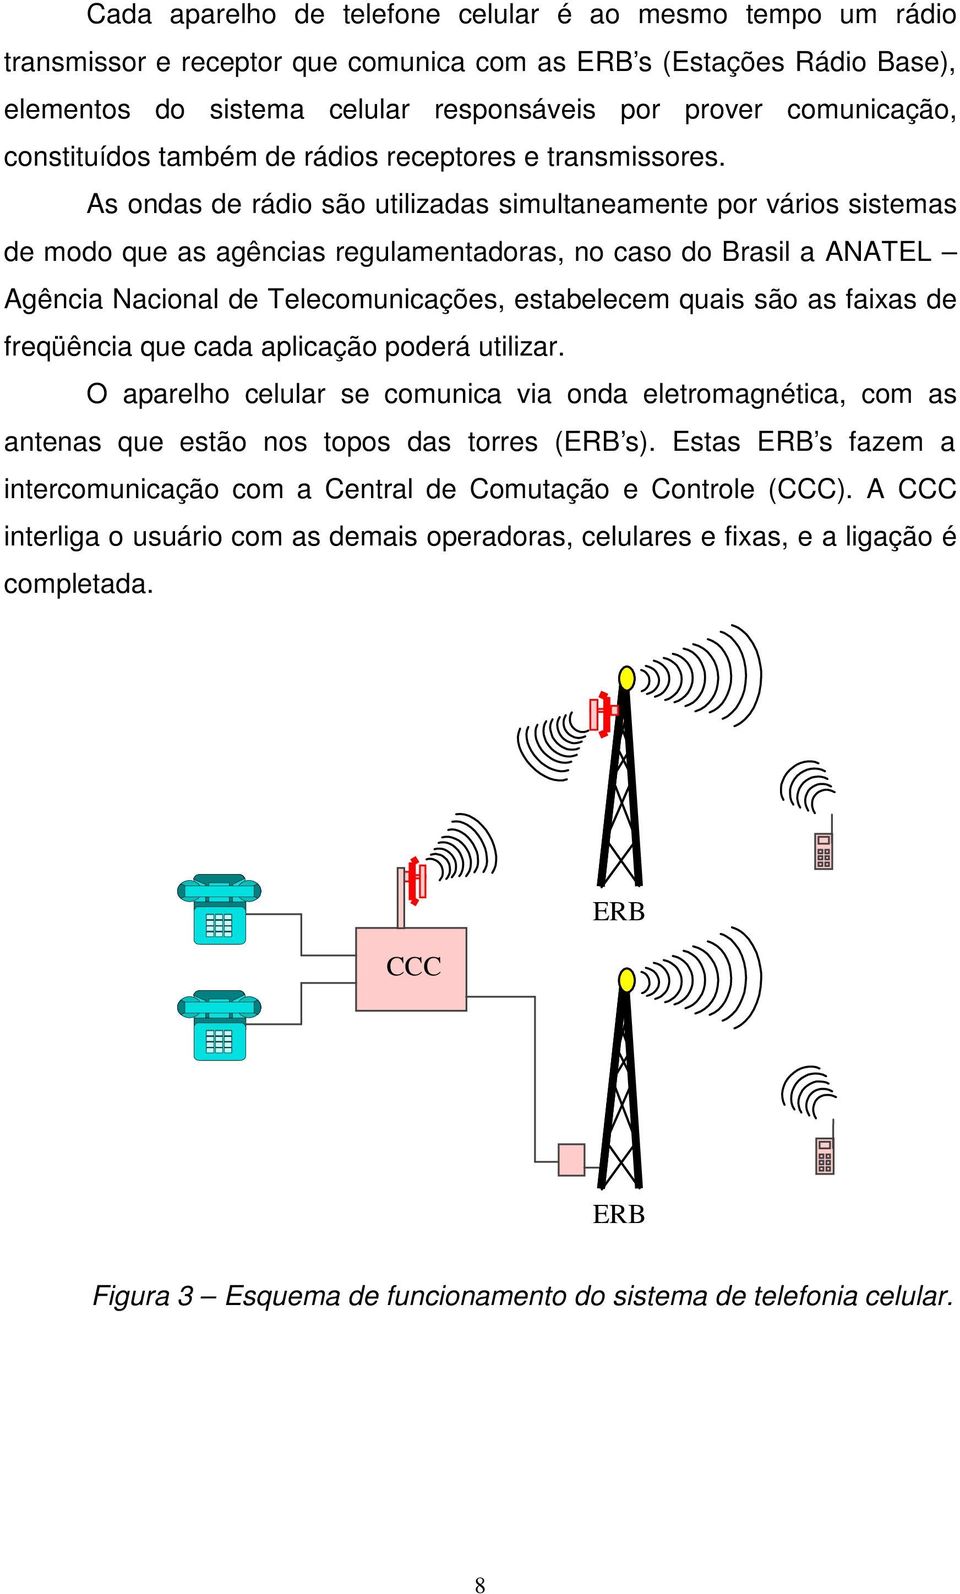 As ondas de rádio são utilizadas simultaneamente por vários sistemas de modo que as agências regulamentadoras, no caso do Brasil a ANATEL Agência Nacional de Telecomunicações, estabelecem quais são